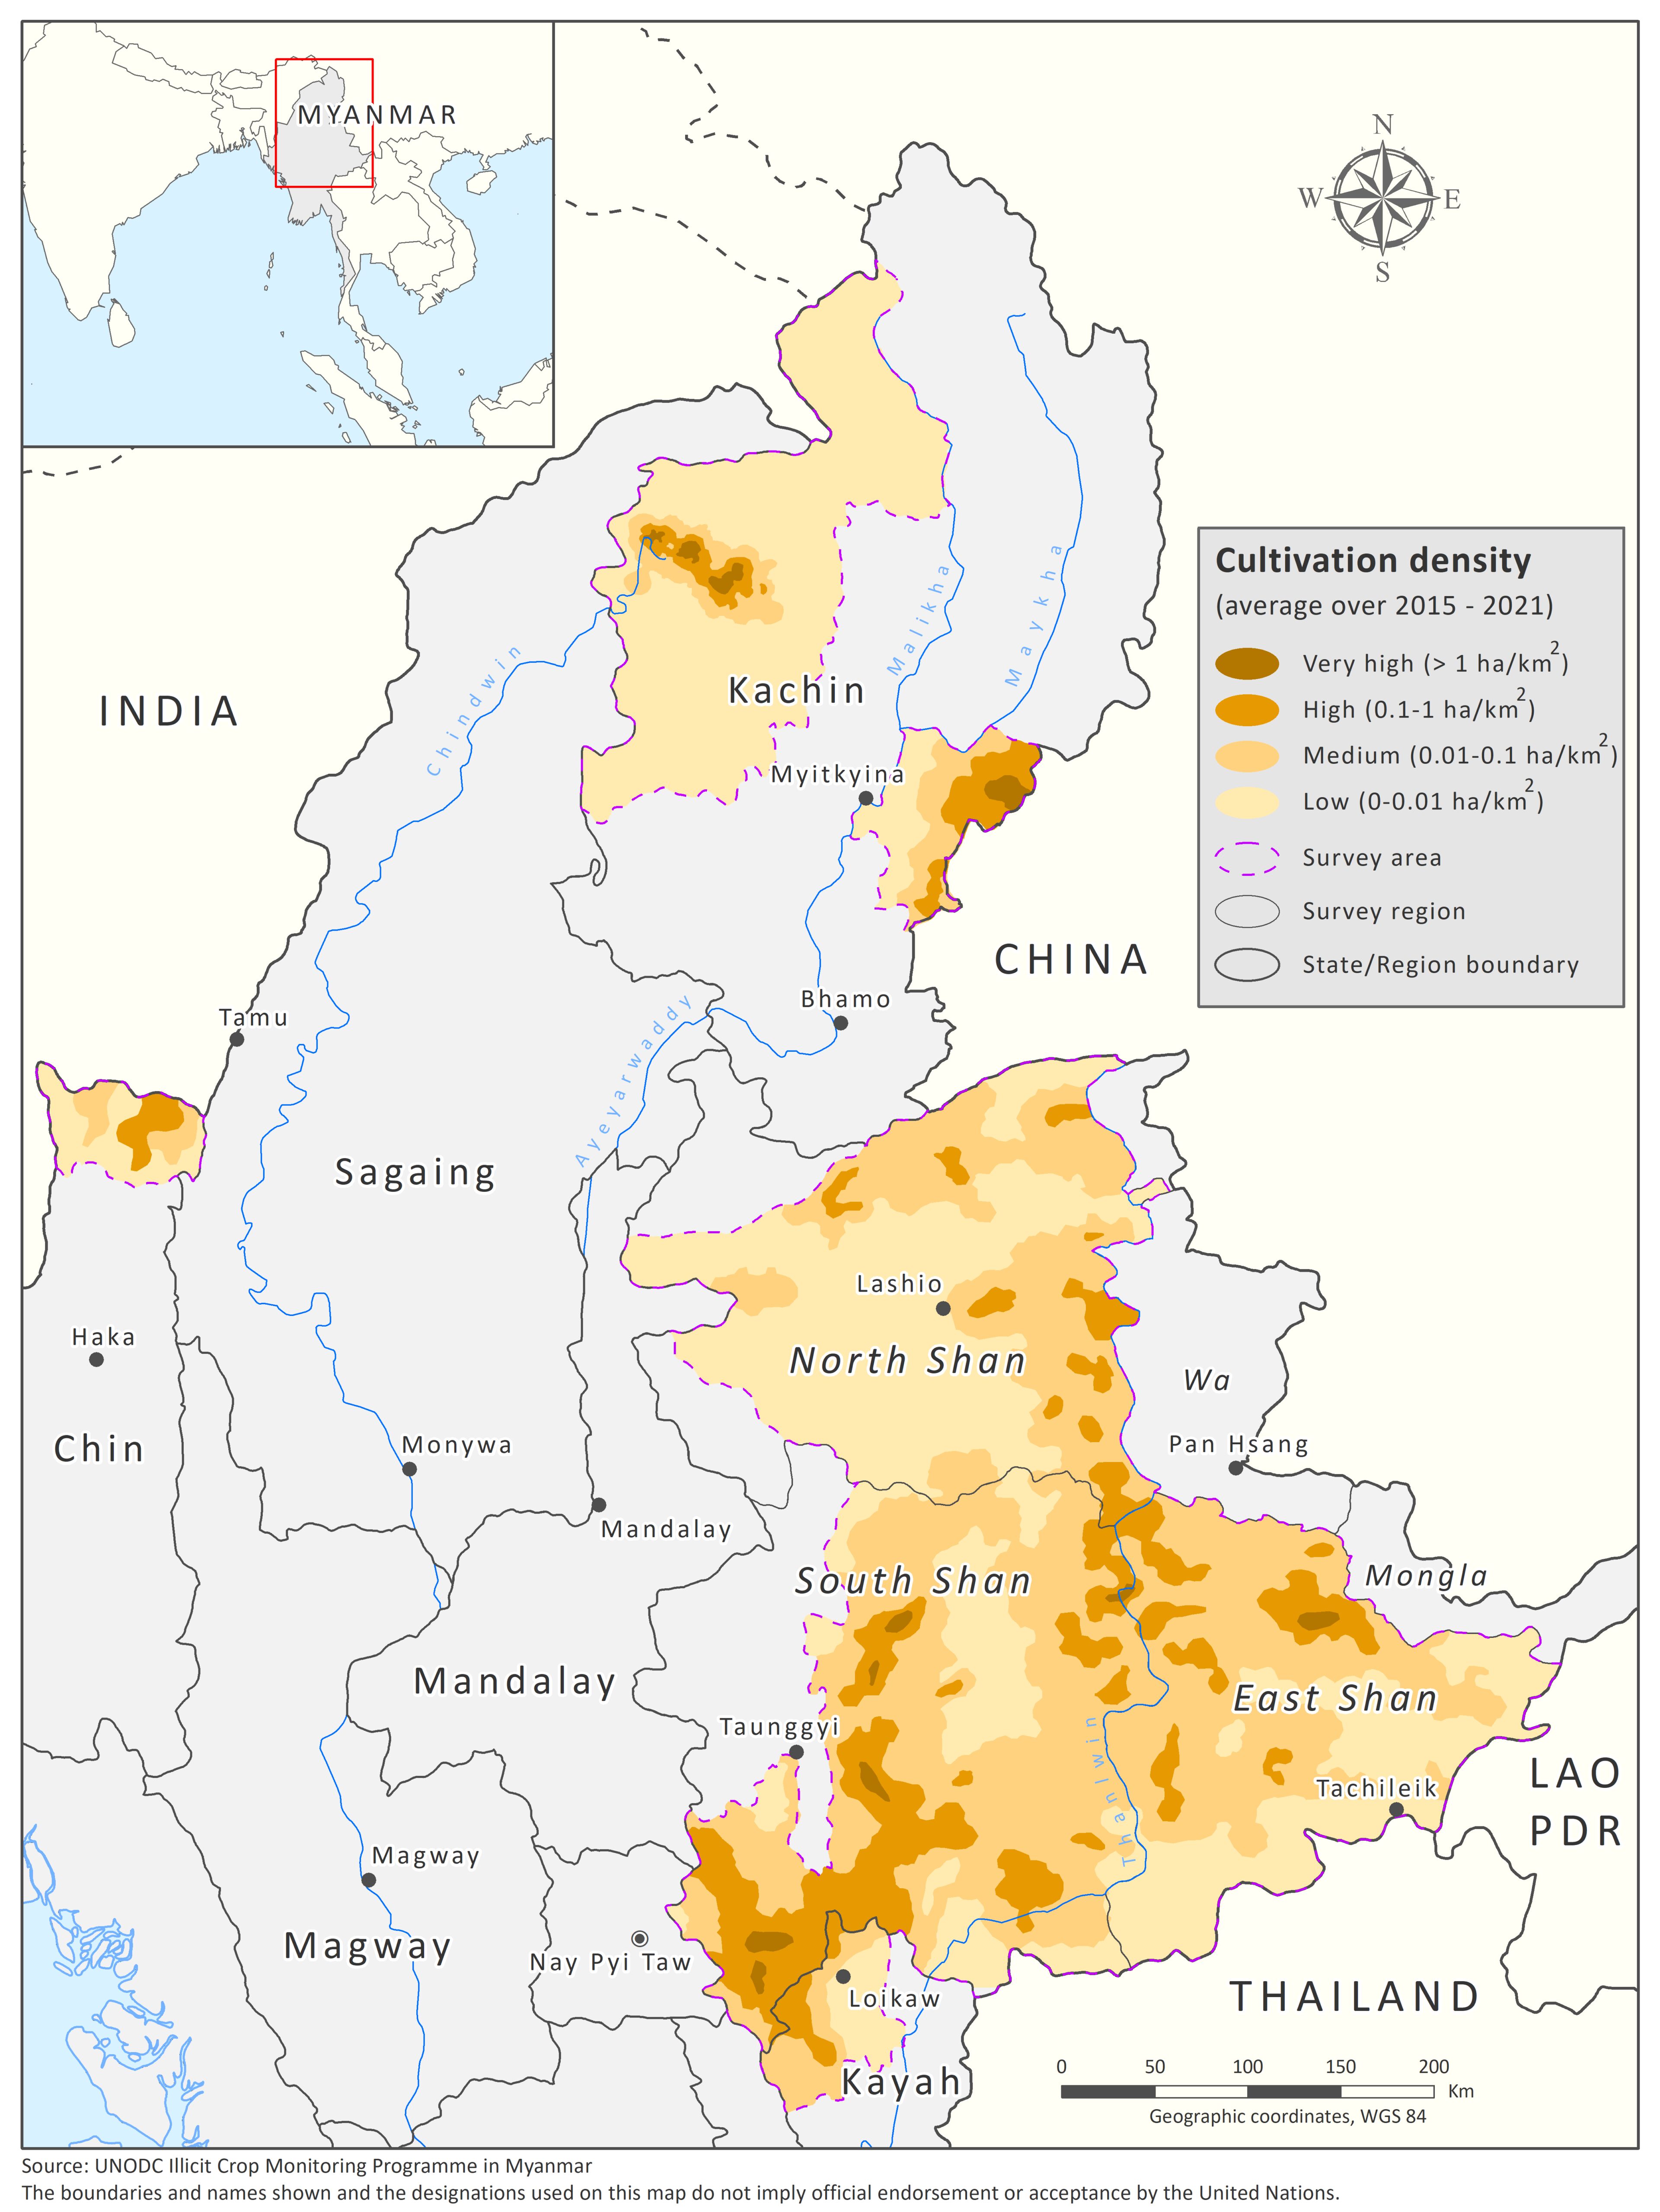 缅甸罂粟种植密度（2015-2021 年期间的平均值，单位为公顷/平方公里）